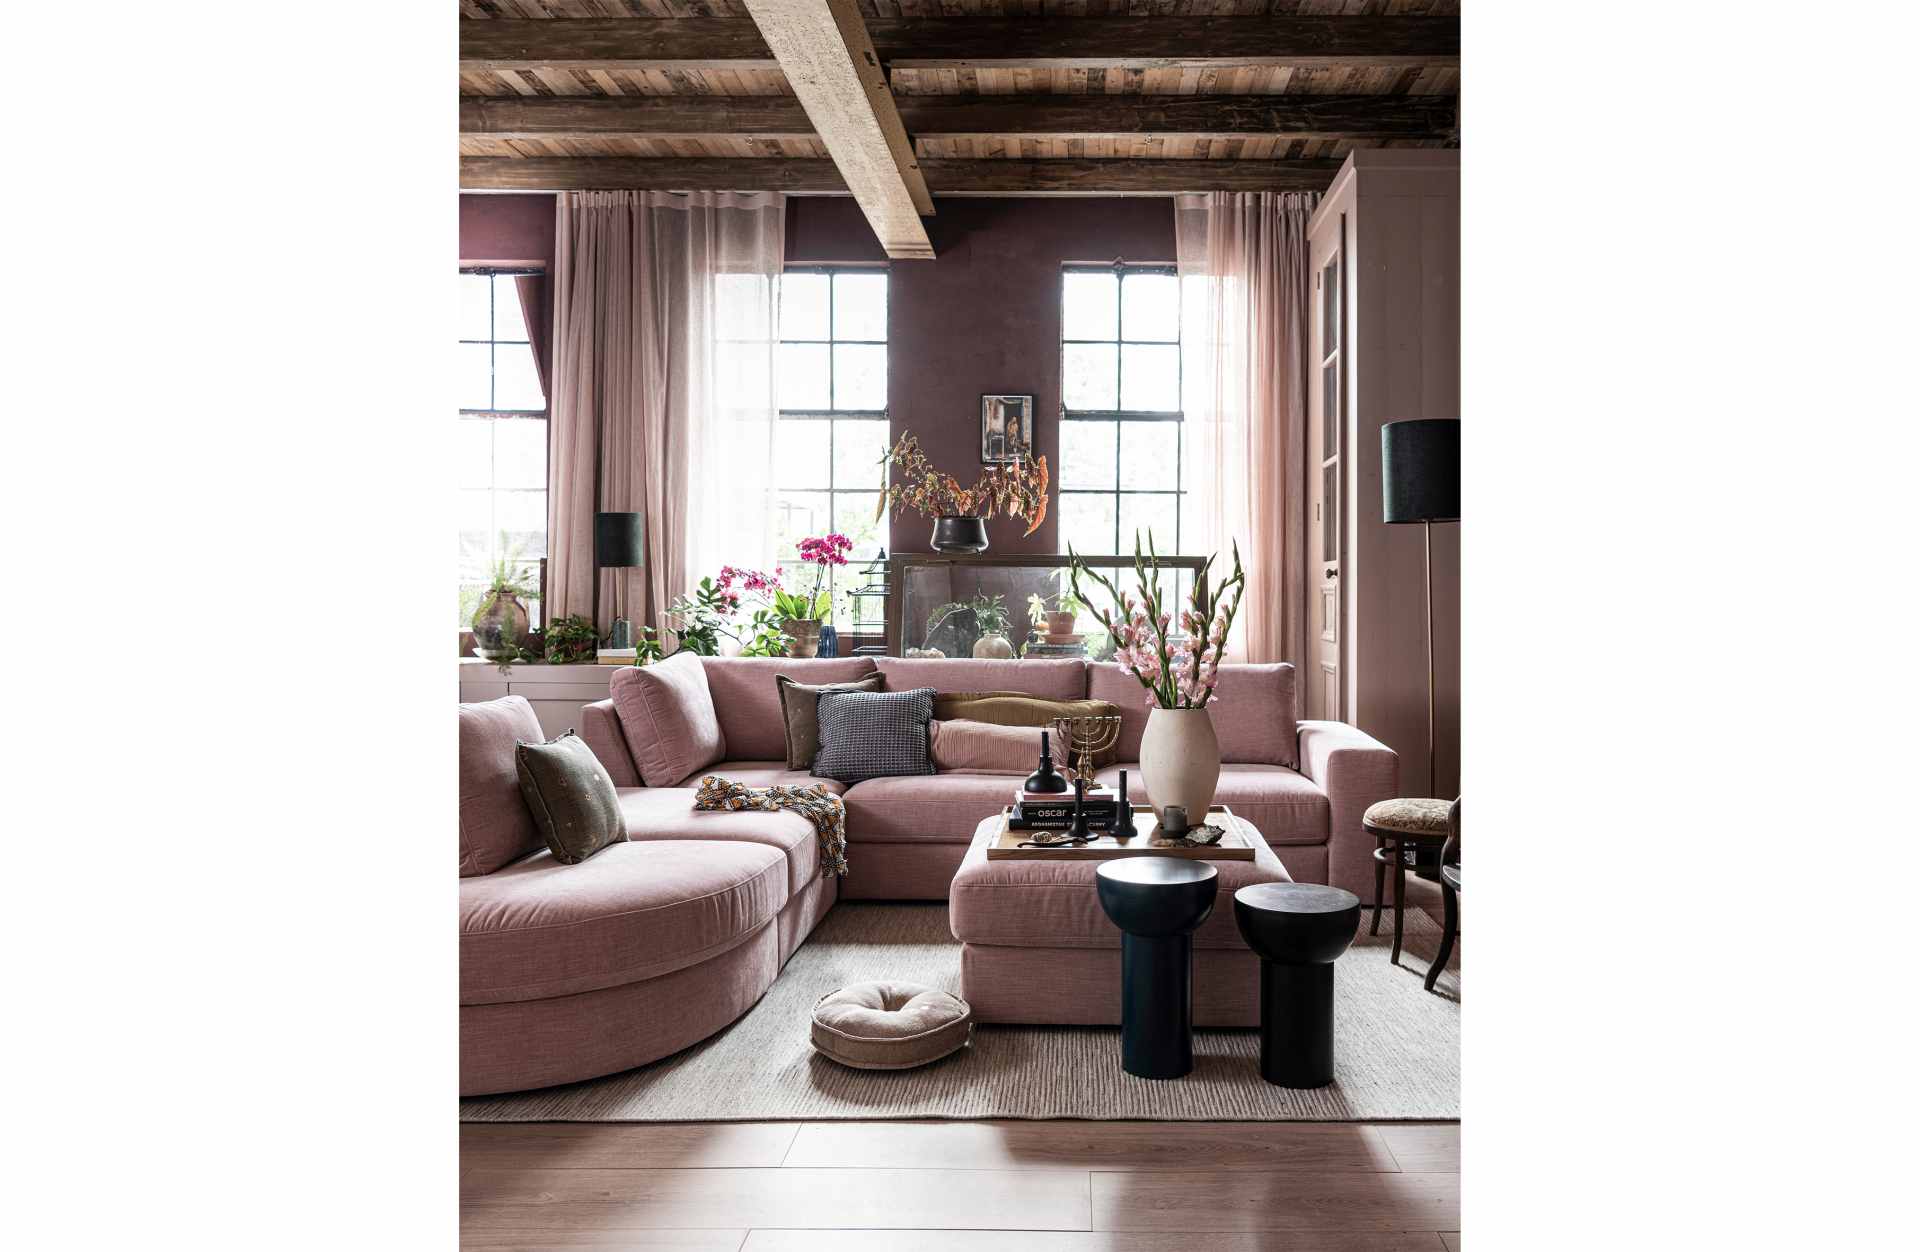 Das Modulsofa Family überzeugt mit seinem modernen Design. Das Eck Element wurde aus Gewebe-Stoff gefertigt, welcher einen einen rosa Farbton besitzen. Das Gestell ist aus Metall und hat eine schwarze Farbe. Das Element hat eine Sitzhöhe von 44 cm.